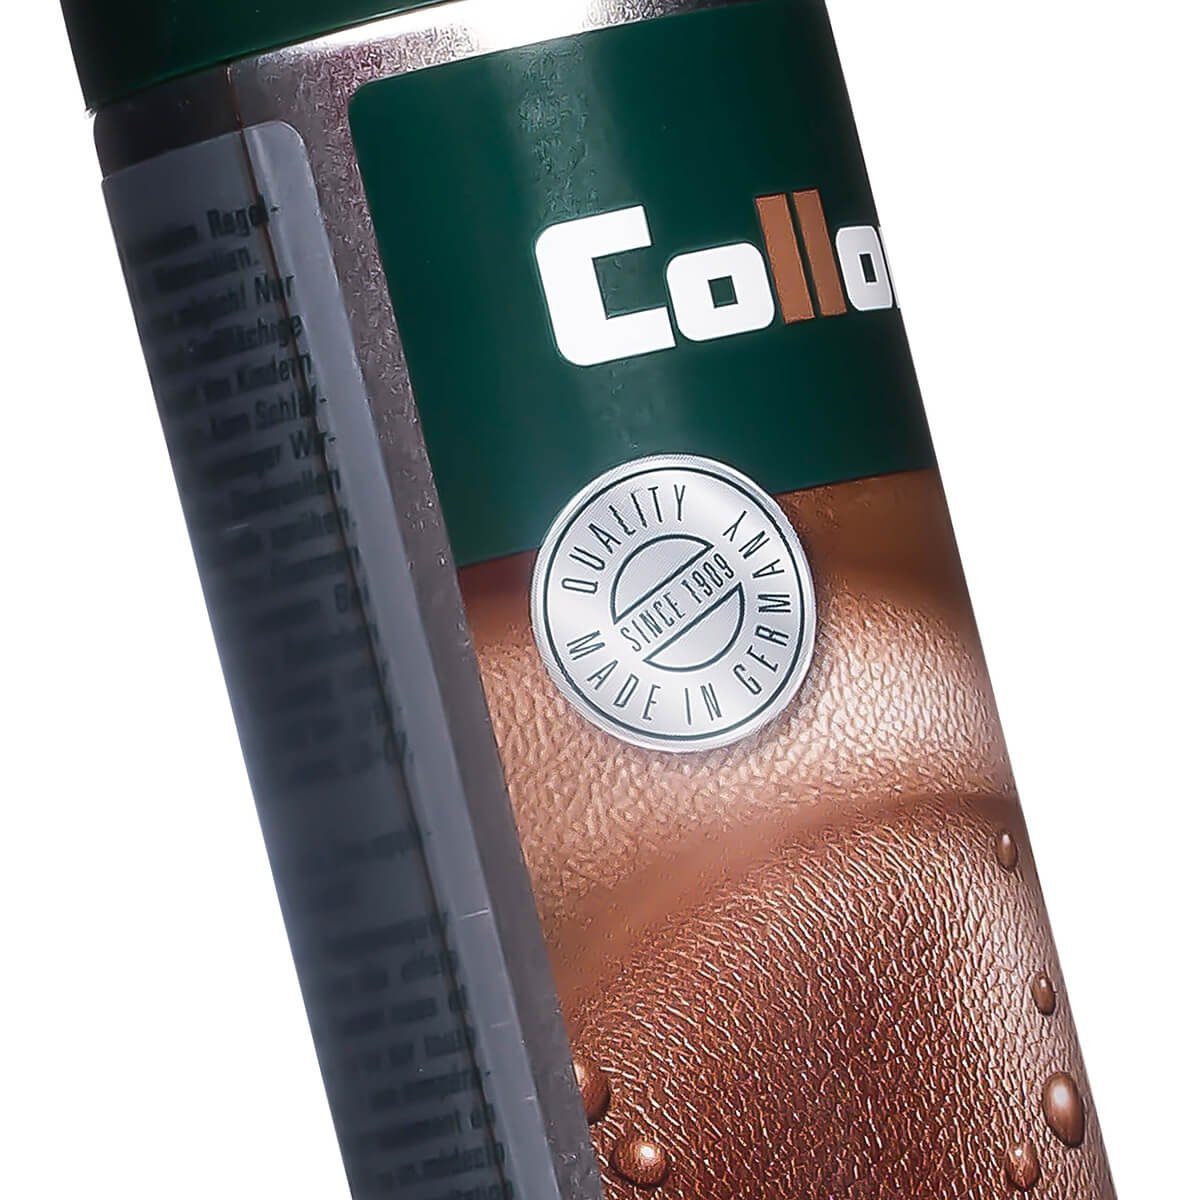 Collonil Leather Proof - alle Schuh-Imprägnierschaum Imprägnierspray Materialien Treibgas für ohne